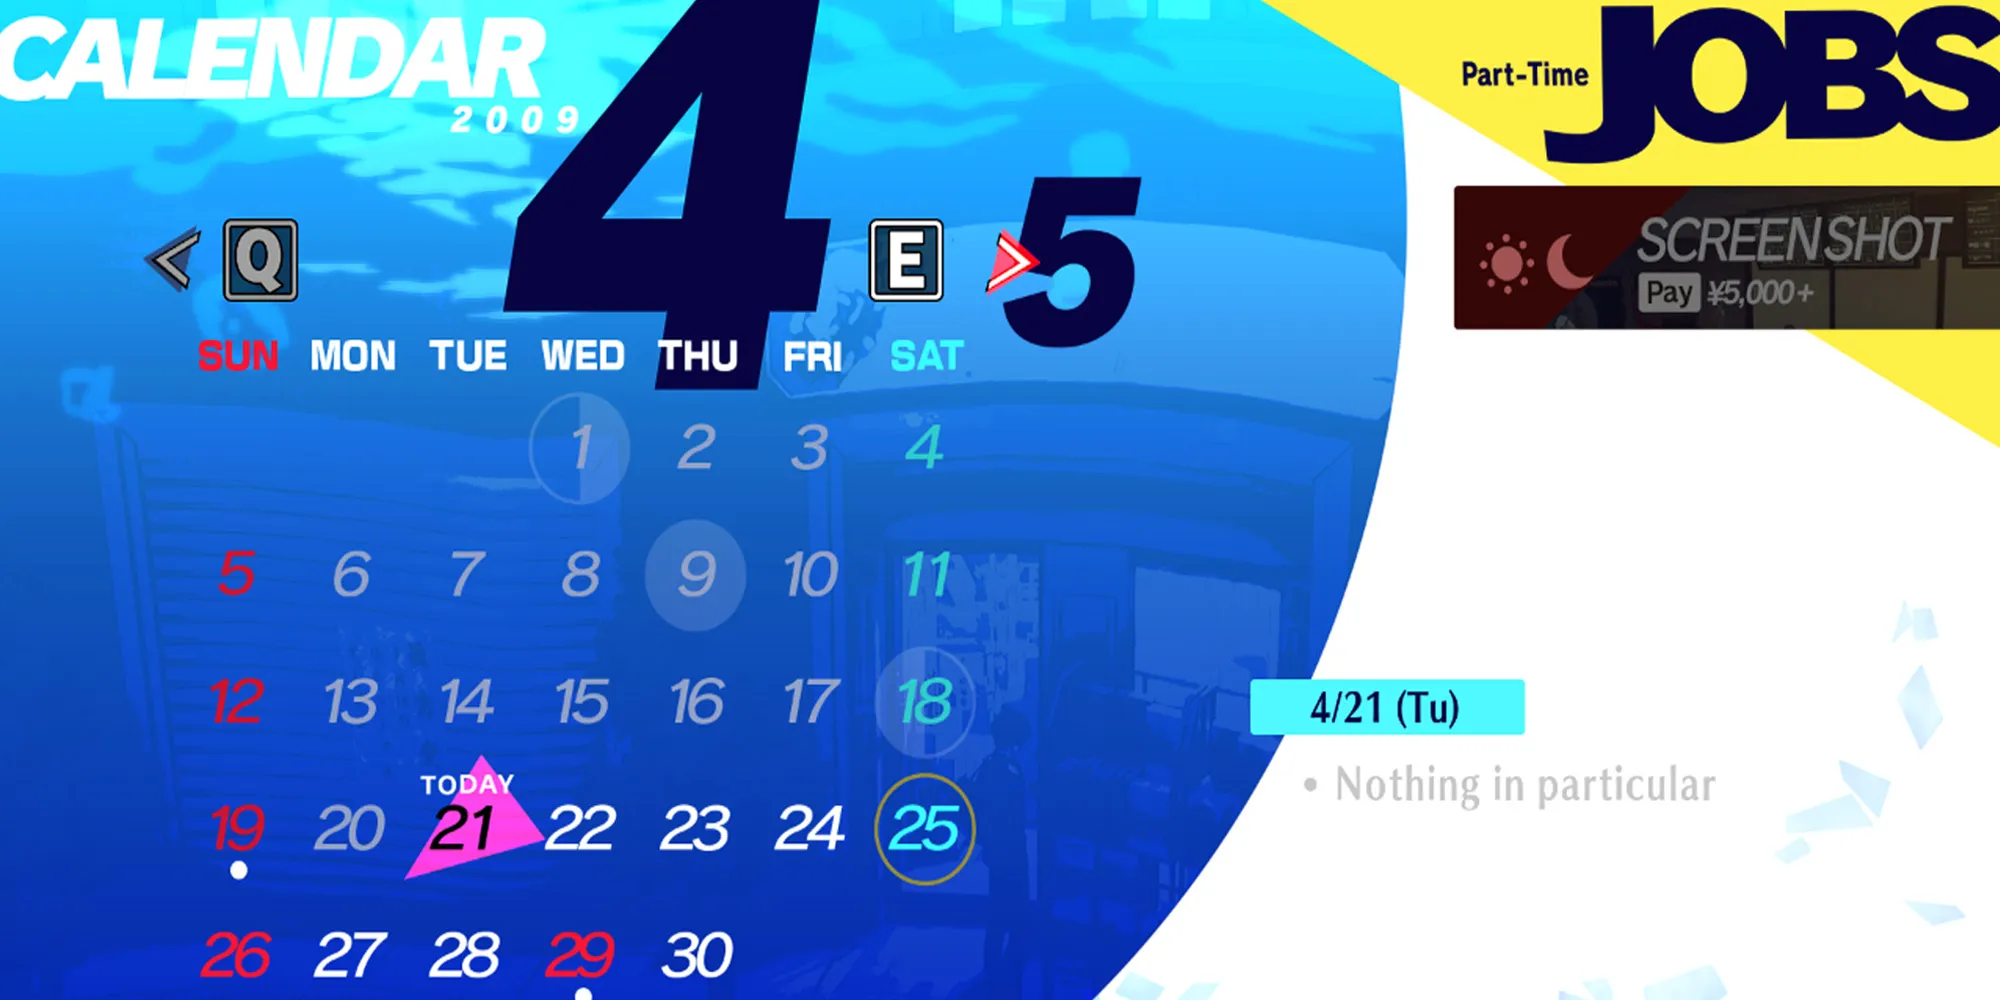 Persona 3 Reload Guide du calendrier P3R pour avril 2009